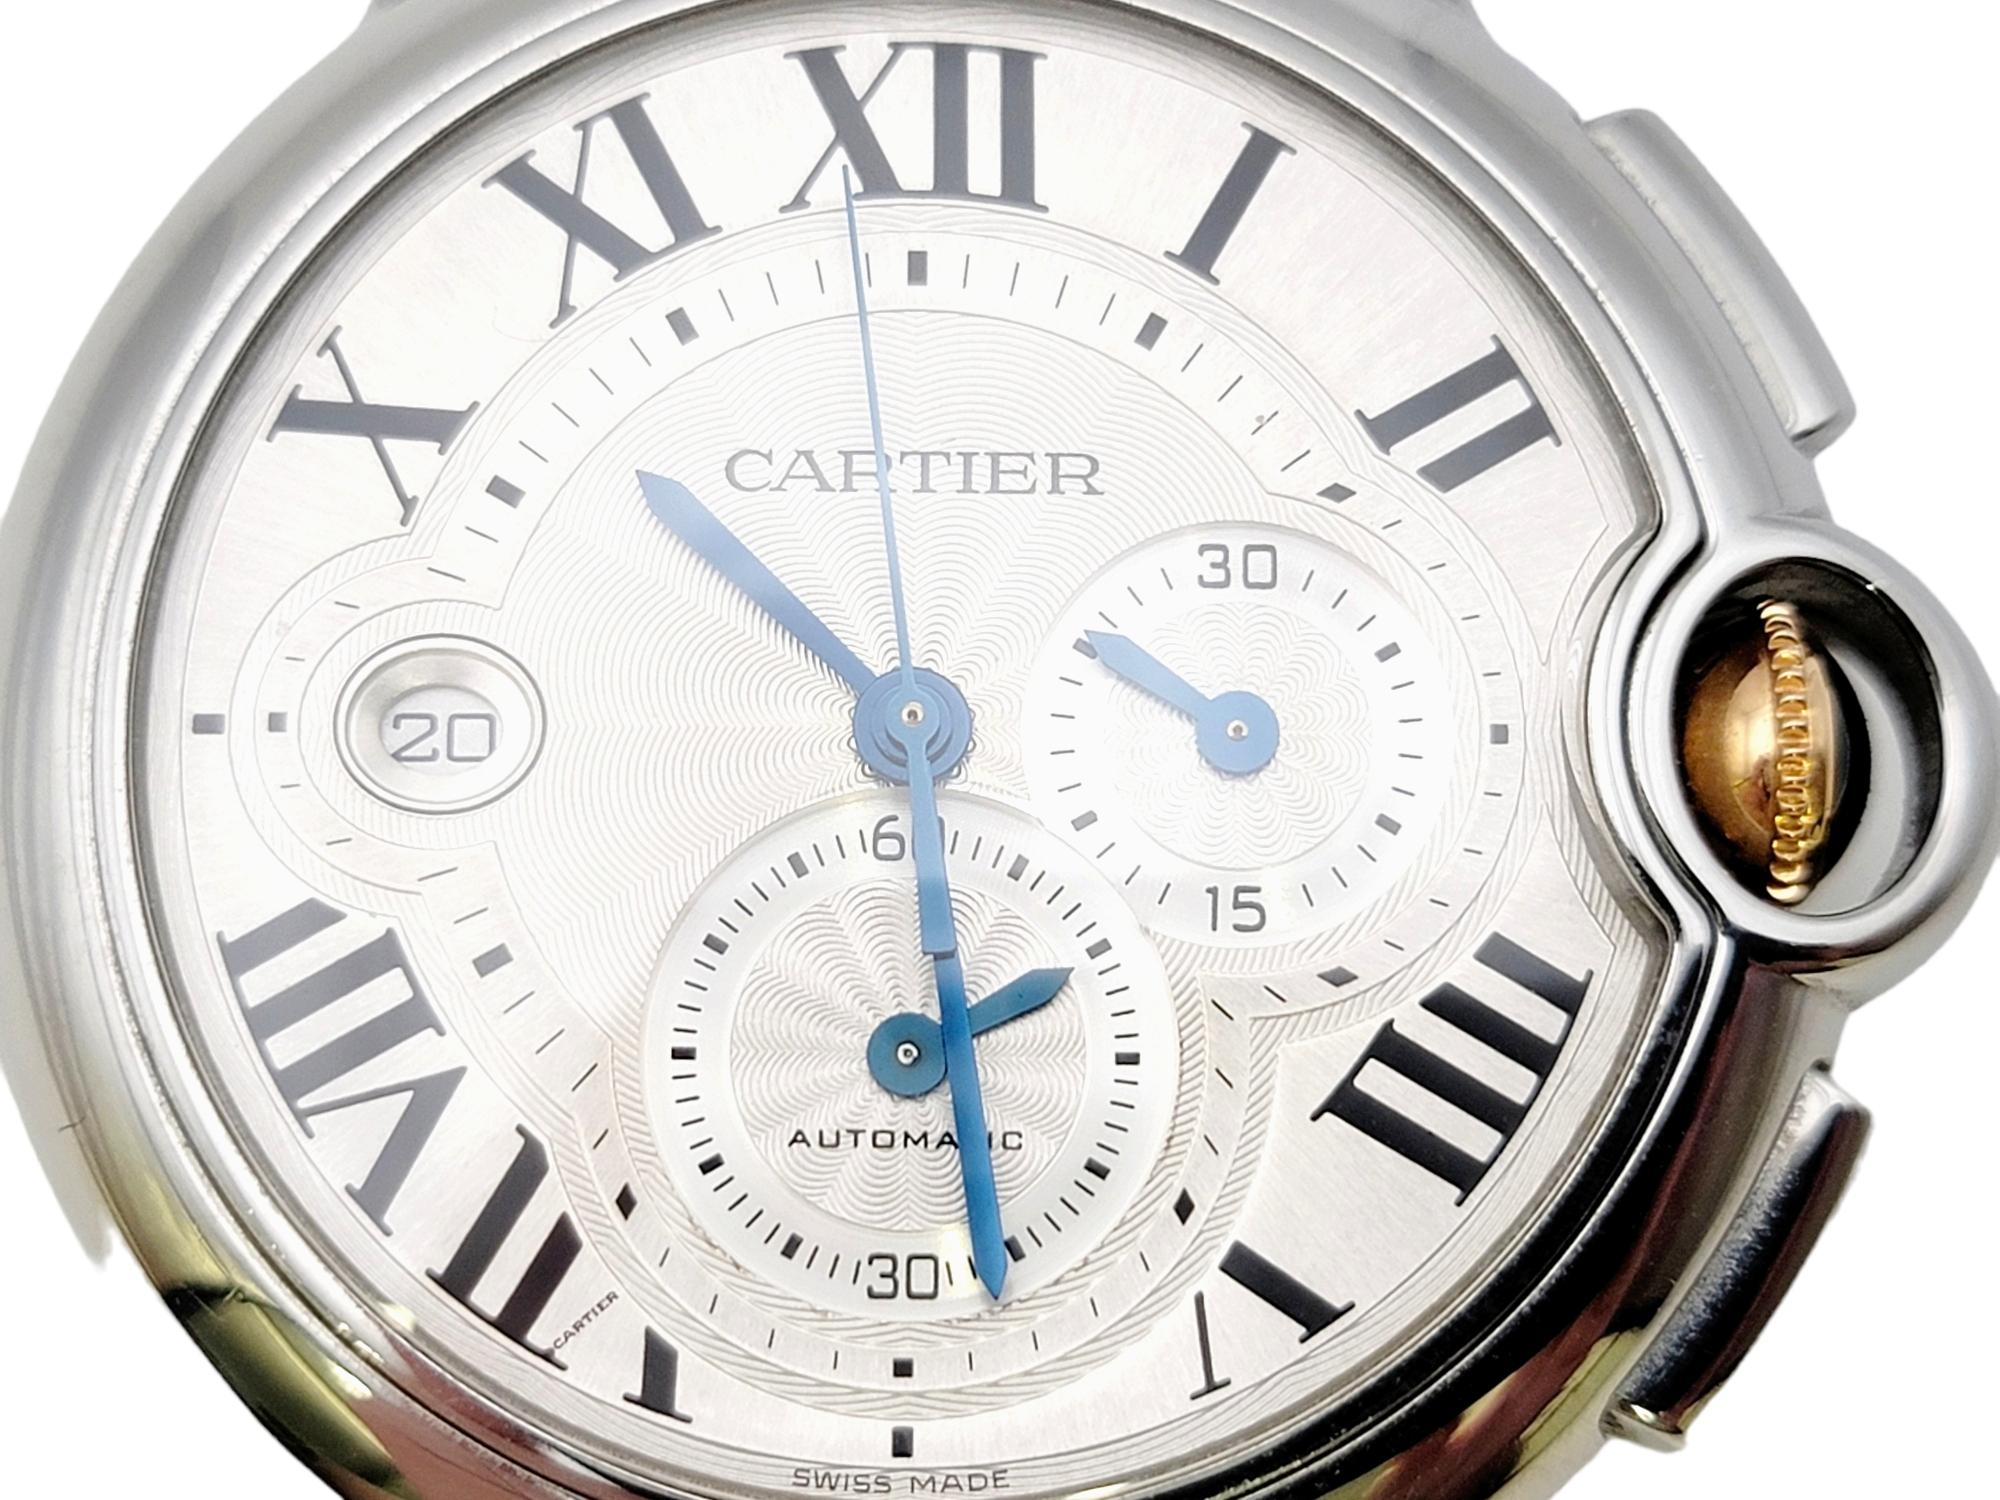 Exquisite Unisex-Armbanduhr, entworfen von Cartier. Das runde Zifferblatt ist besonders groß und verfügt über blaue Stahlzeiger, ein silbernes Zifferblatt, ein Automatikwerk, einen Chronographen, eine Datumsanzeige und schwarze römische Ziffern. Die